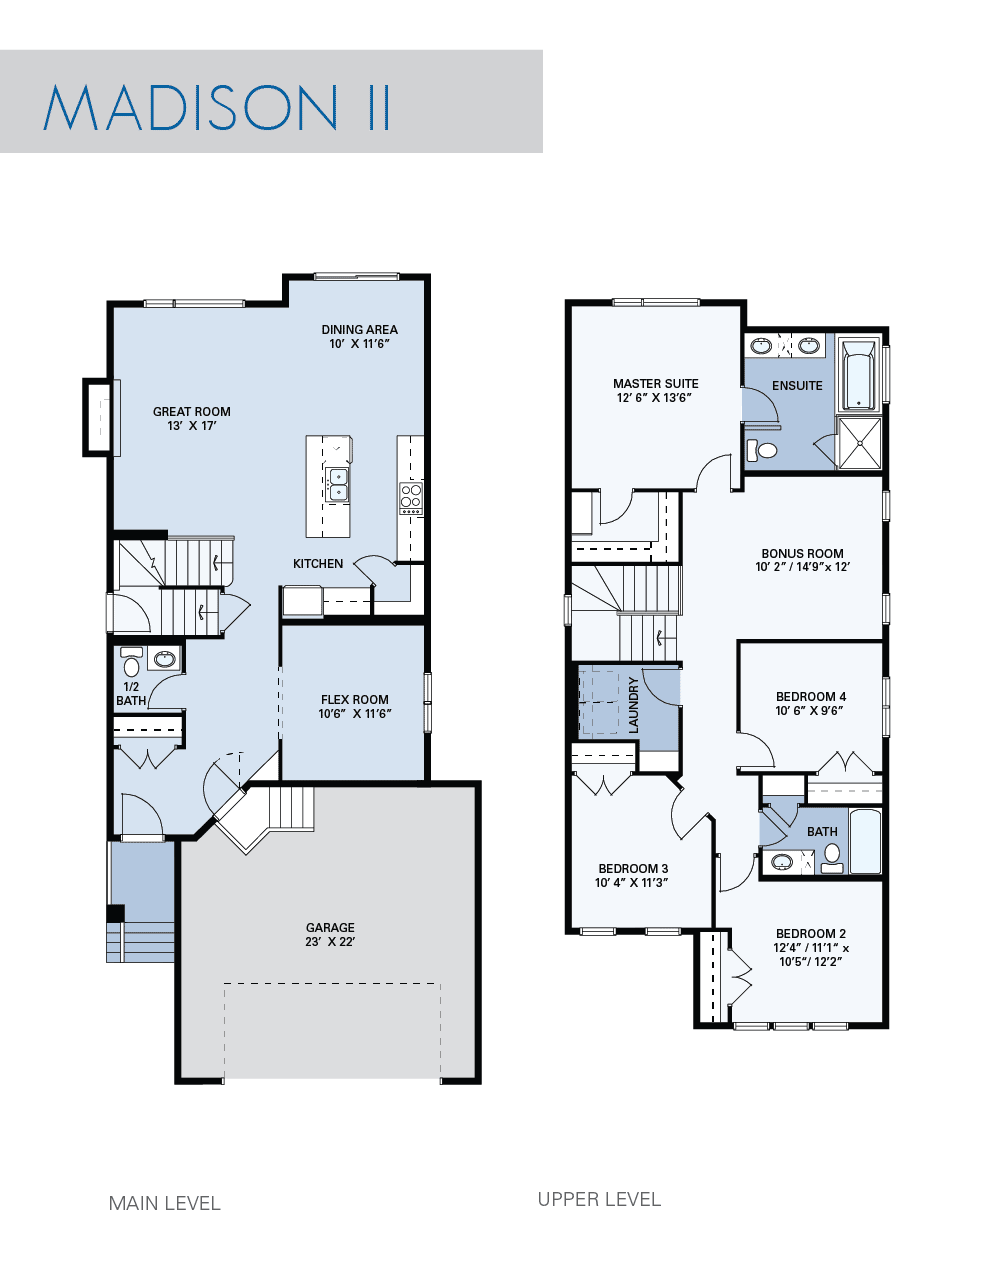 Madison II floorplan